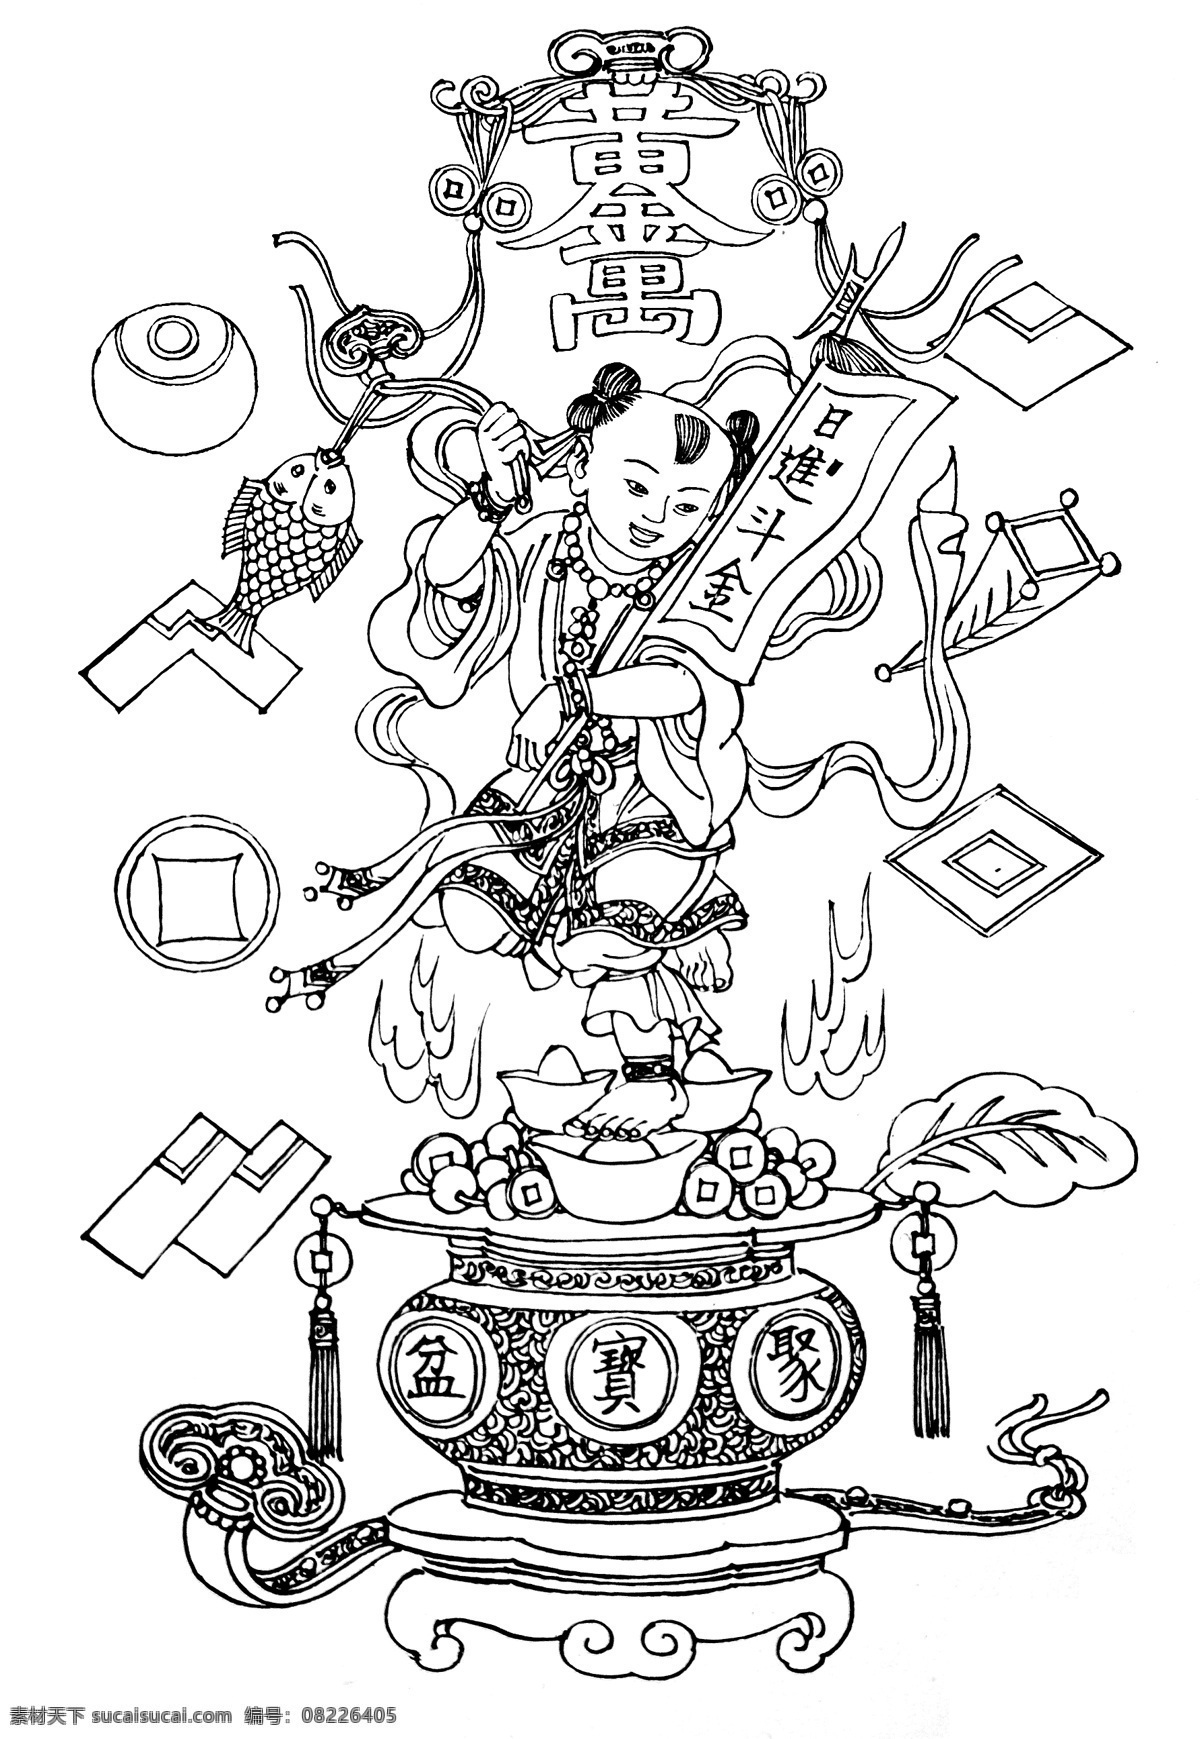 聚宝盆 吉祥 图案 绘画书法 吉祥图案 民俗文化 文化艺术 中国传统 中国吉祥图案 神话故事 民间传说 吉祥纹图 神话图案 中国吉祥图像